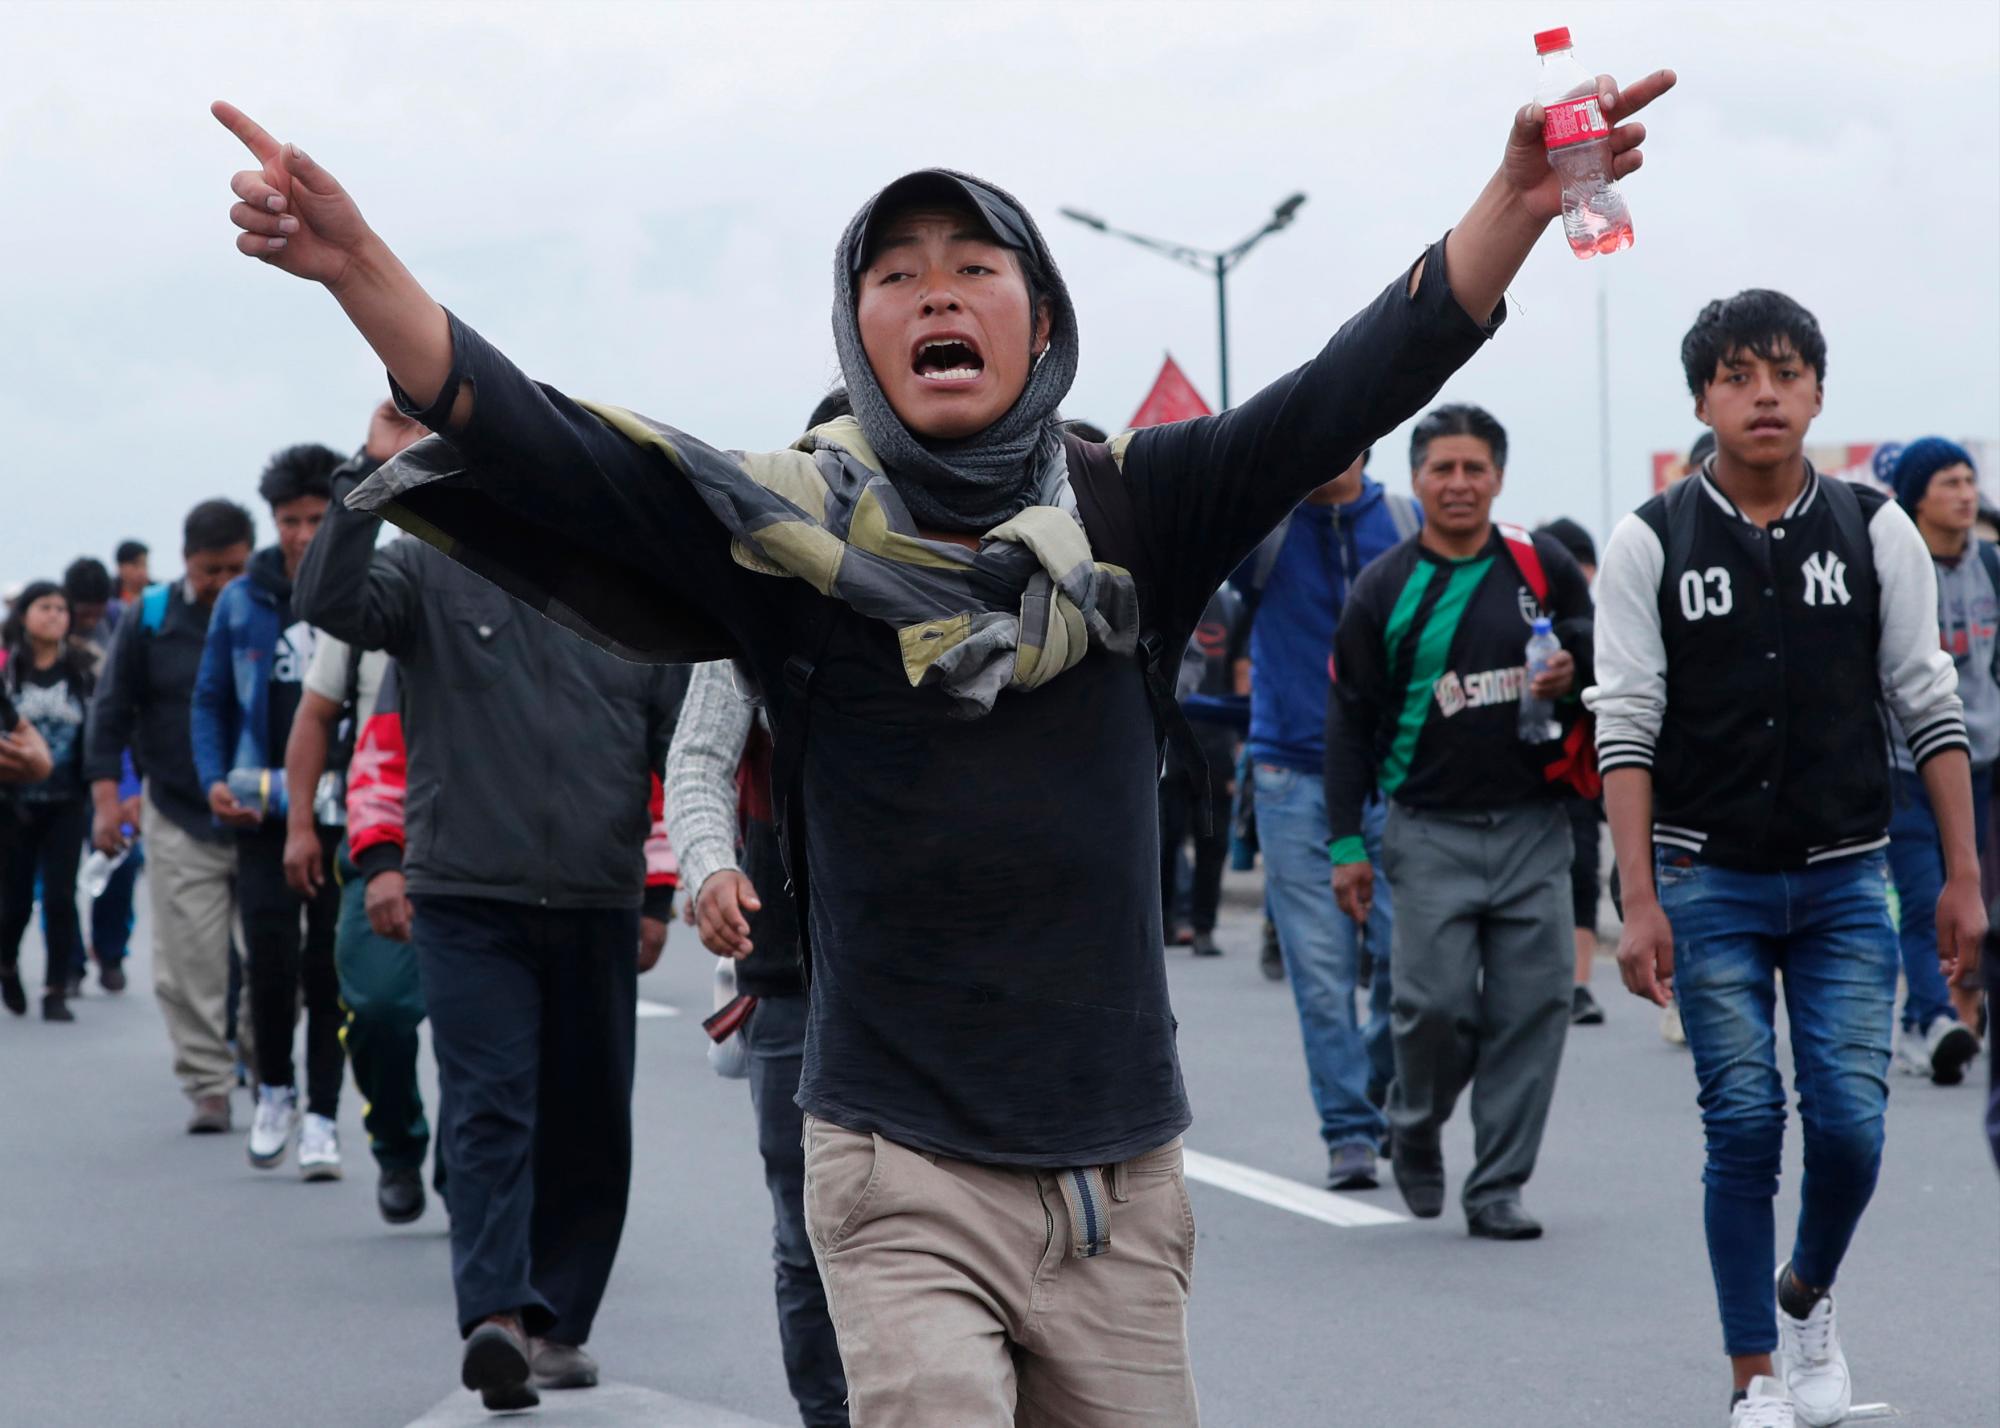 Manifestantes indígenas antigubernamentales llegan a pie a Quito, Ecuador, el martes 8 de octubre de 2019. Ecuador ha sufrido días de agitación popular desde que el presidente Lenin Moreno eliminó los subsidios al precio del combustible, un paso que desencadenó protestas y enfrentamientos en el país. 